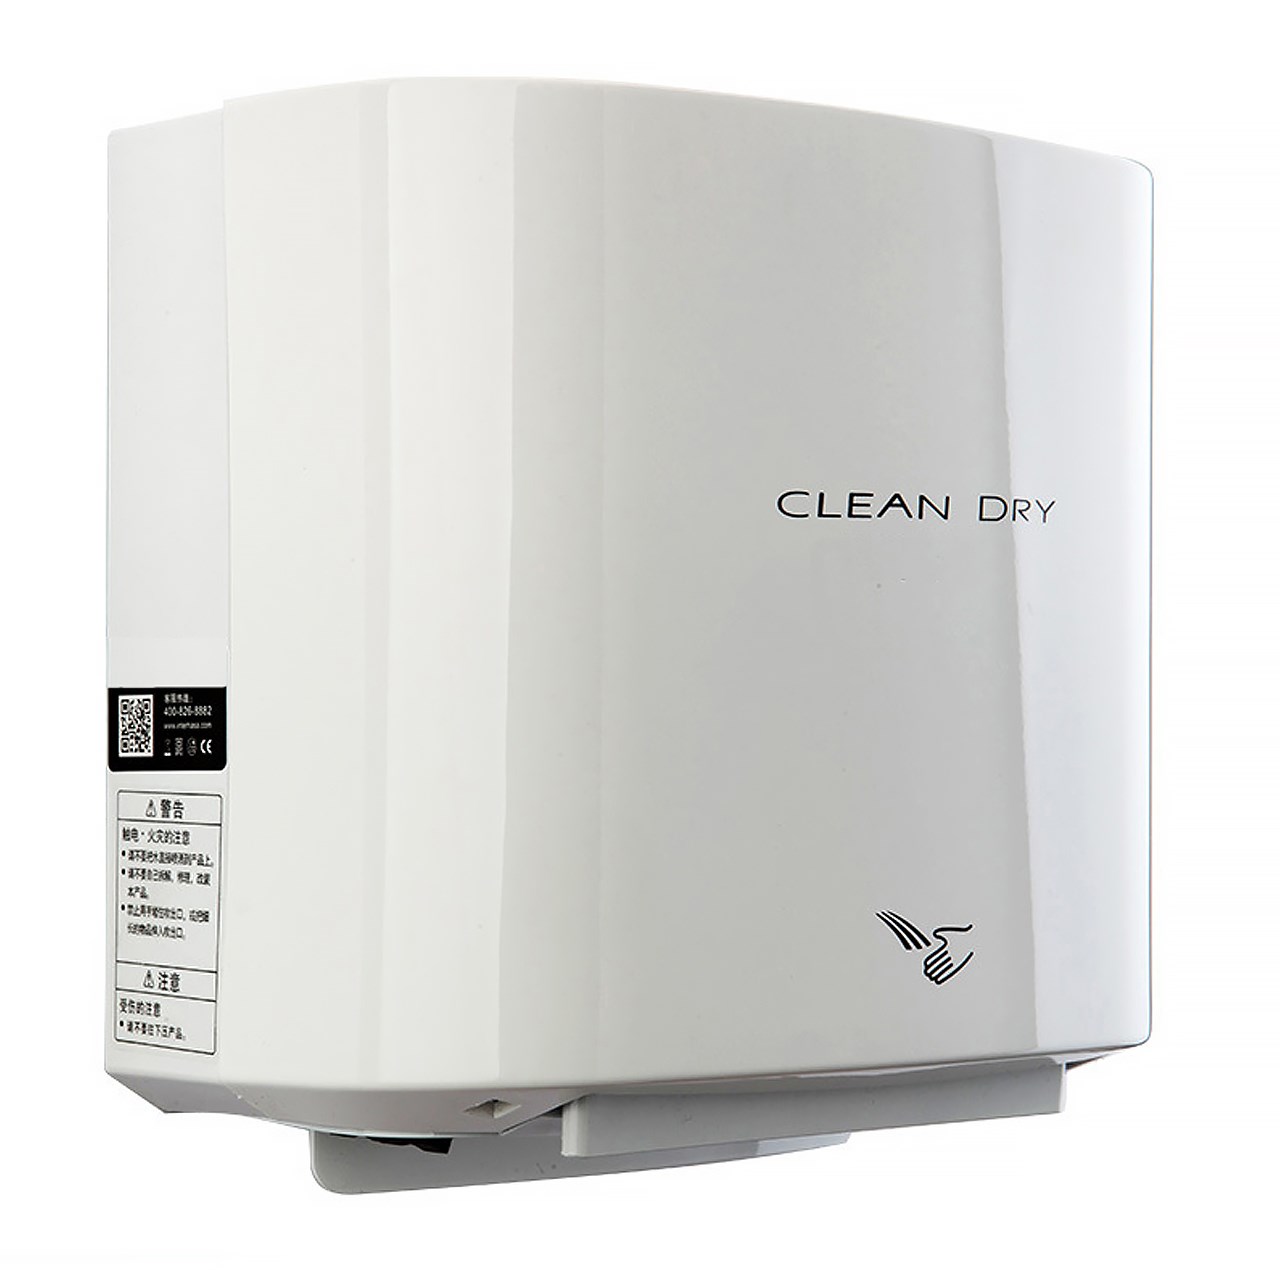 دست خشک کن برقی JET  هایتک 1000 وات مدل CLEAN Dry